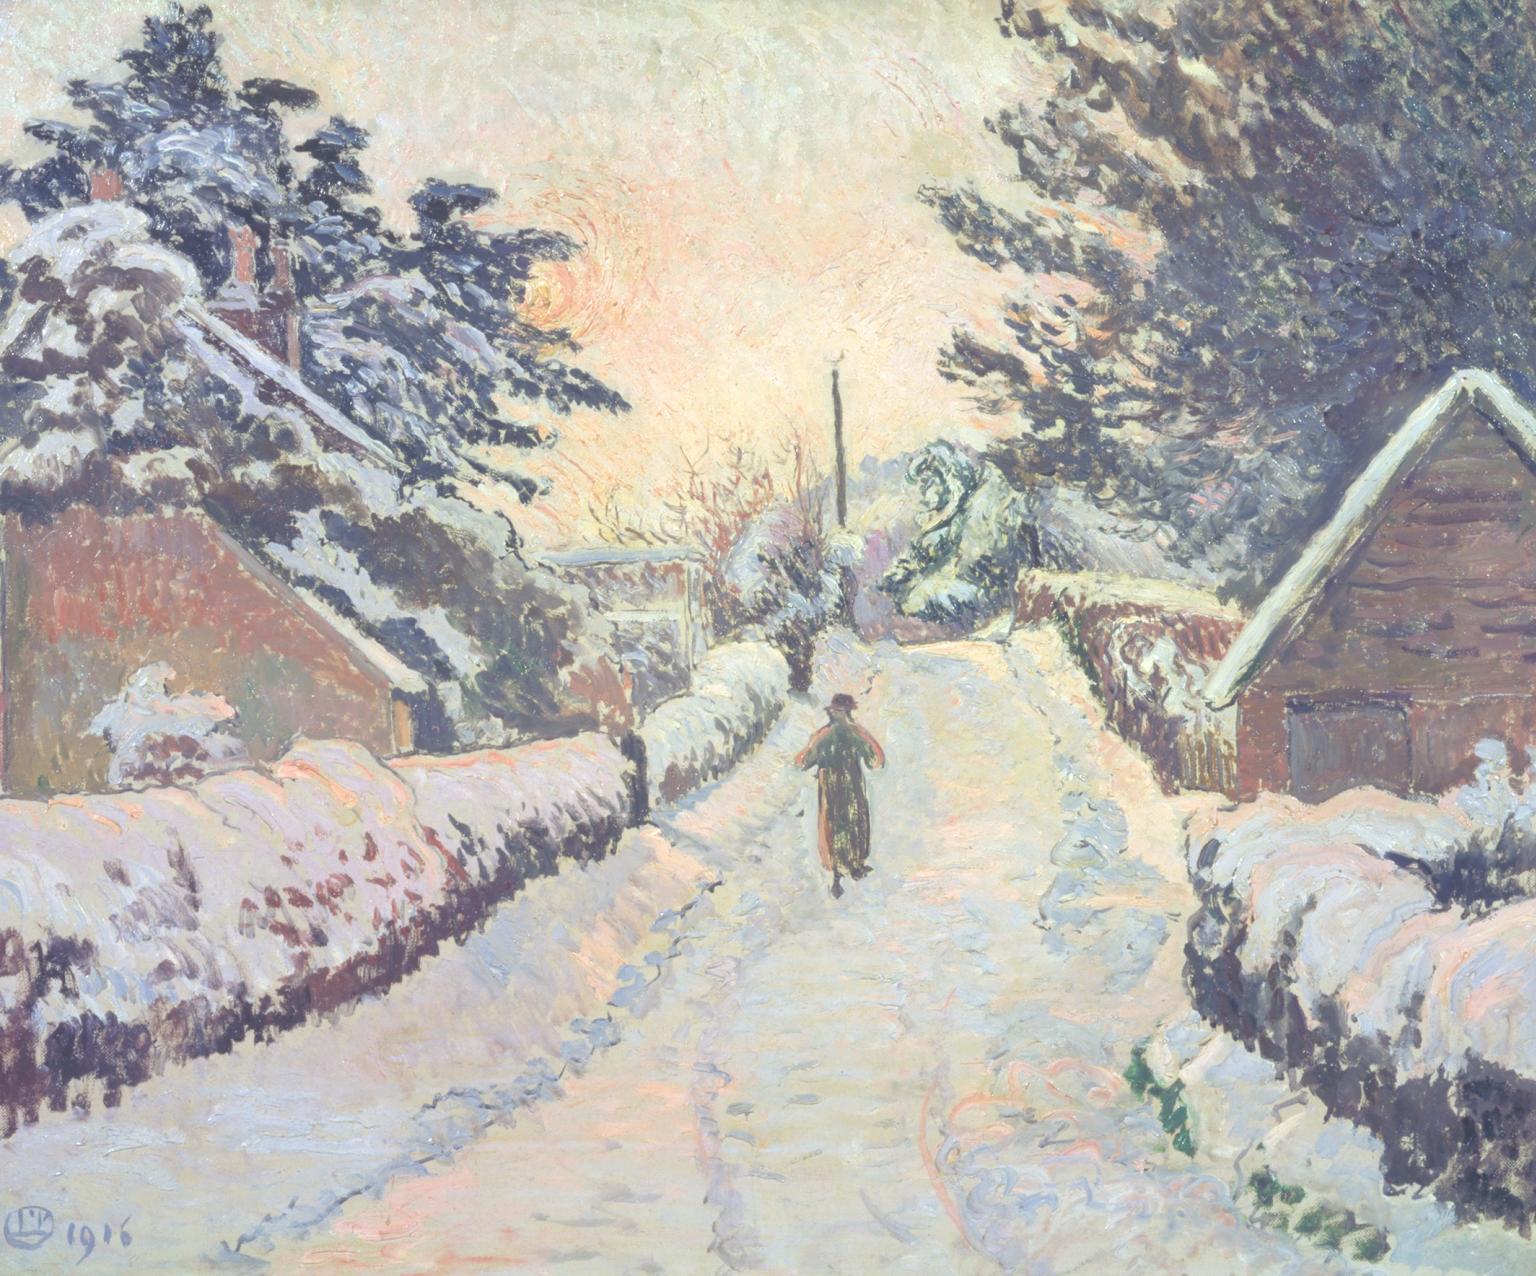 आइवी कॉटेज, कोल्डहार्बर: धूप और बर्फ by Lucien Pissarro - 1916 - 53 × 64.4 सेमी 